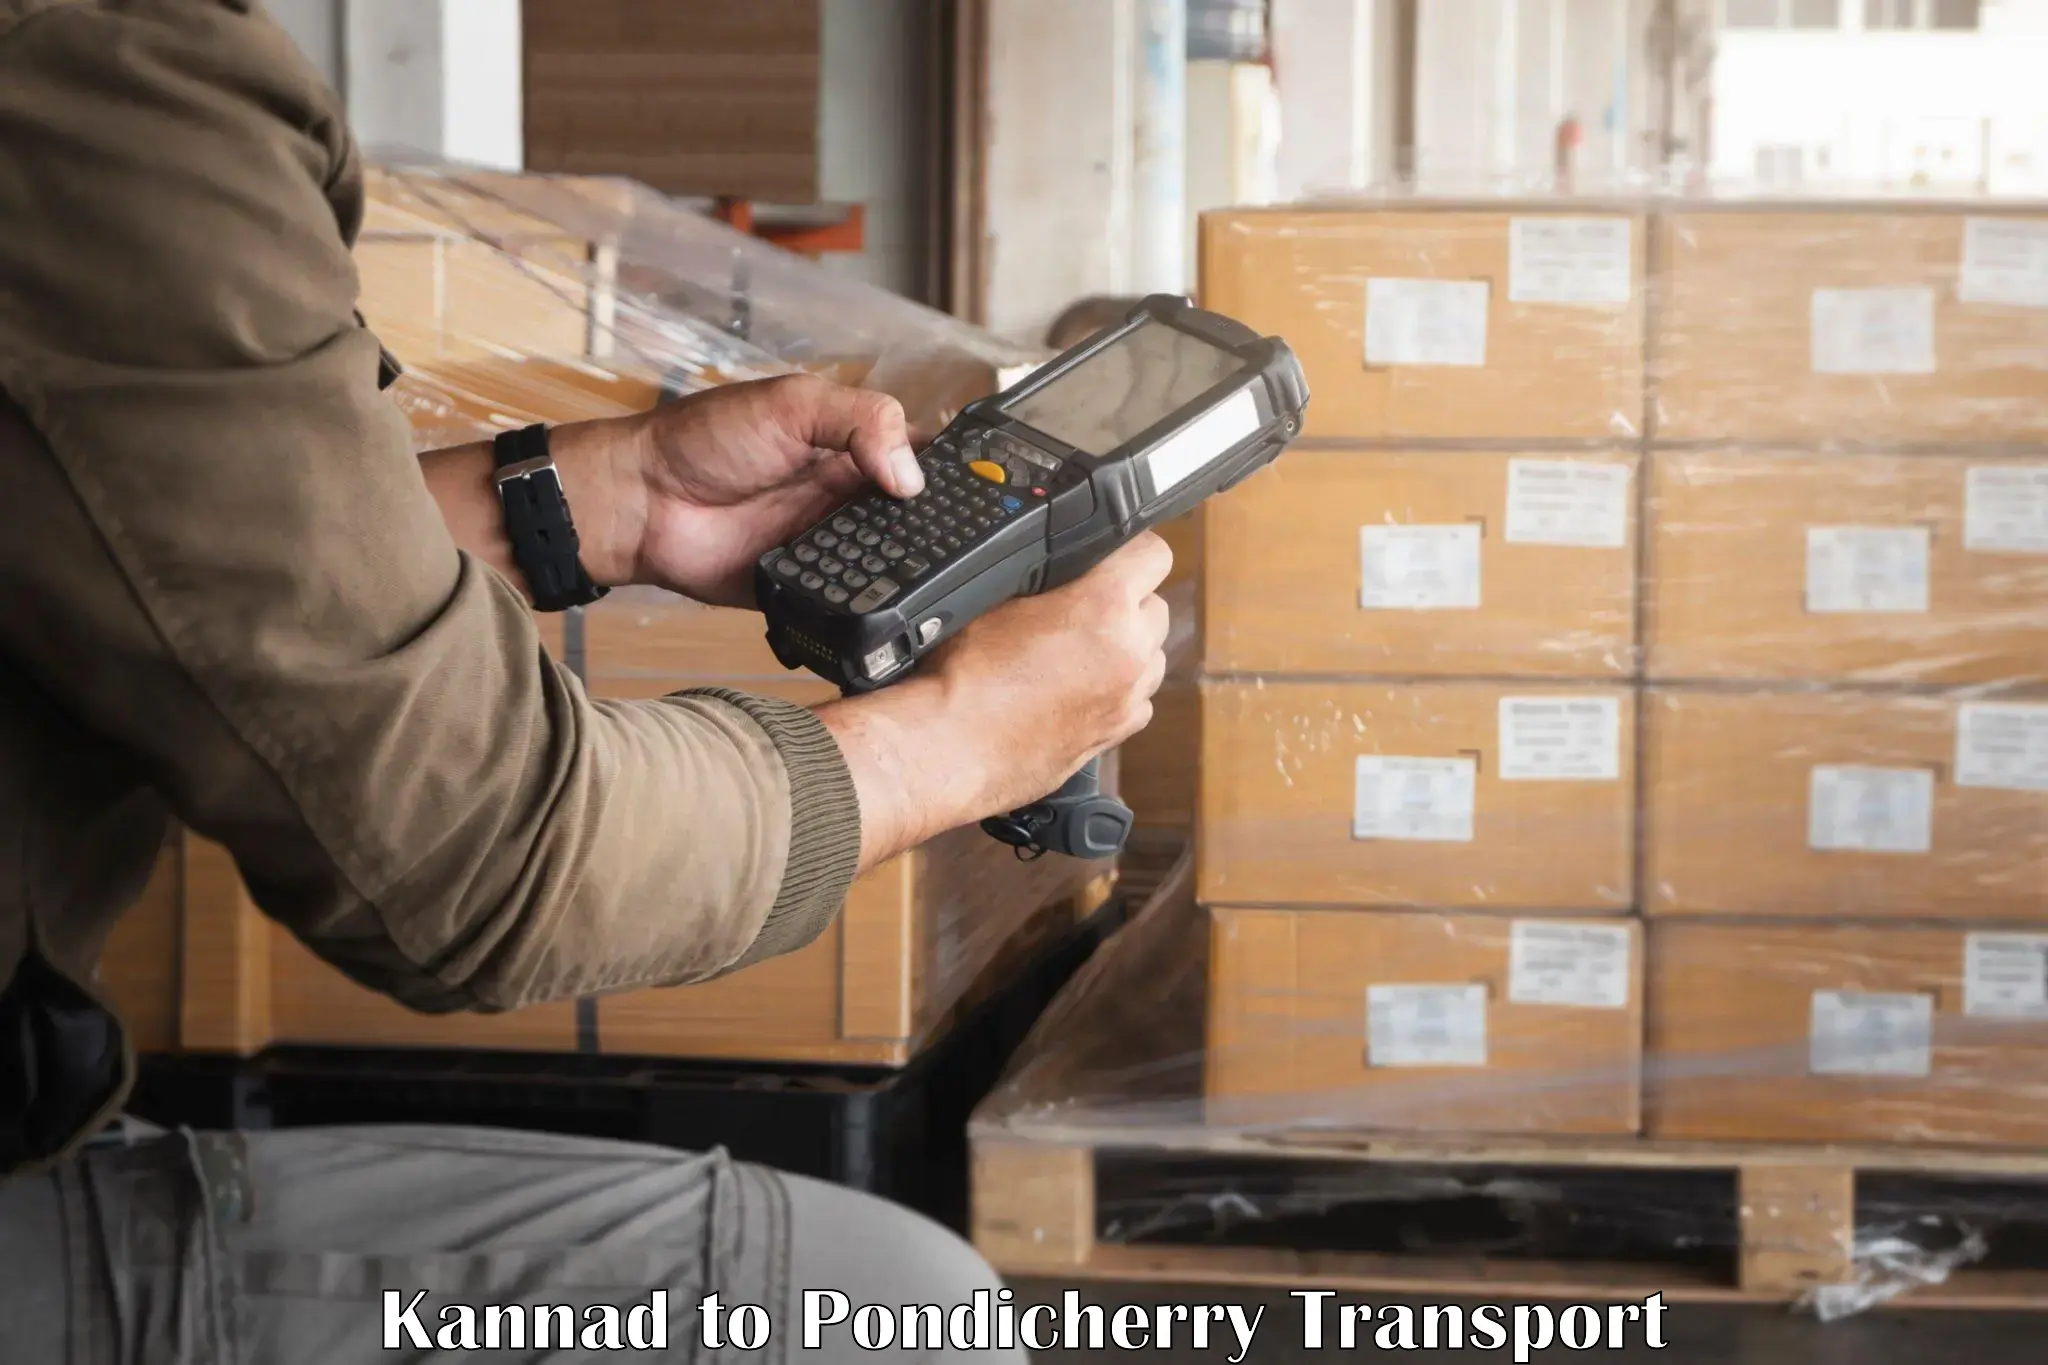 Online transport service Kannad to Pondicherry